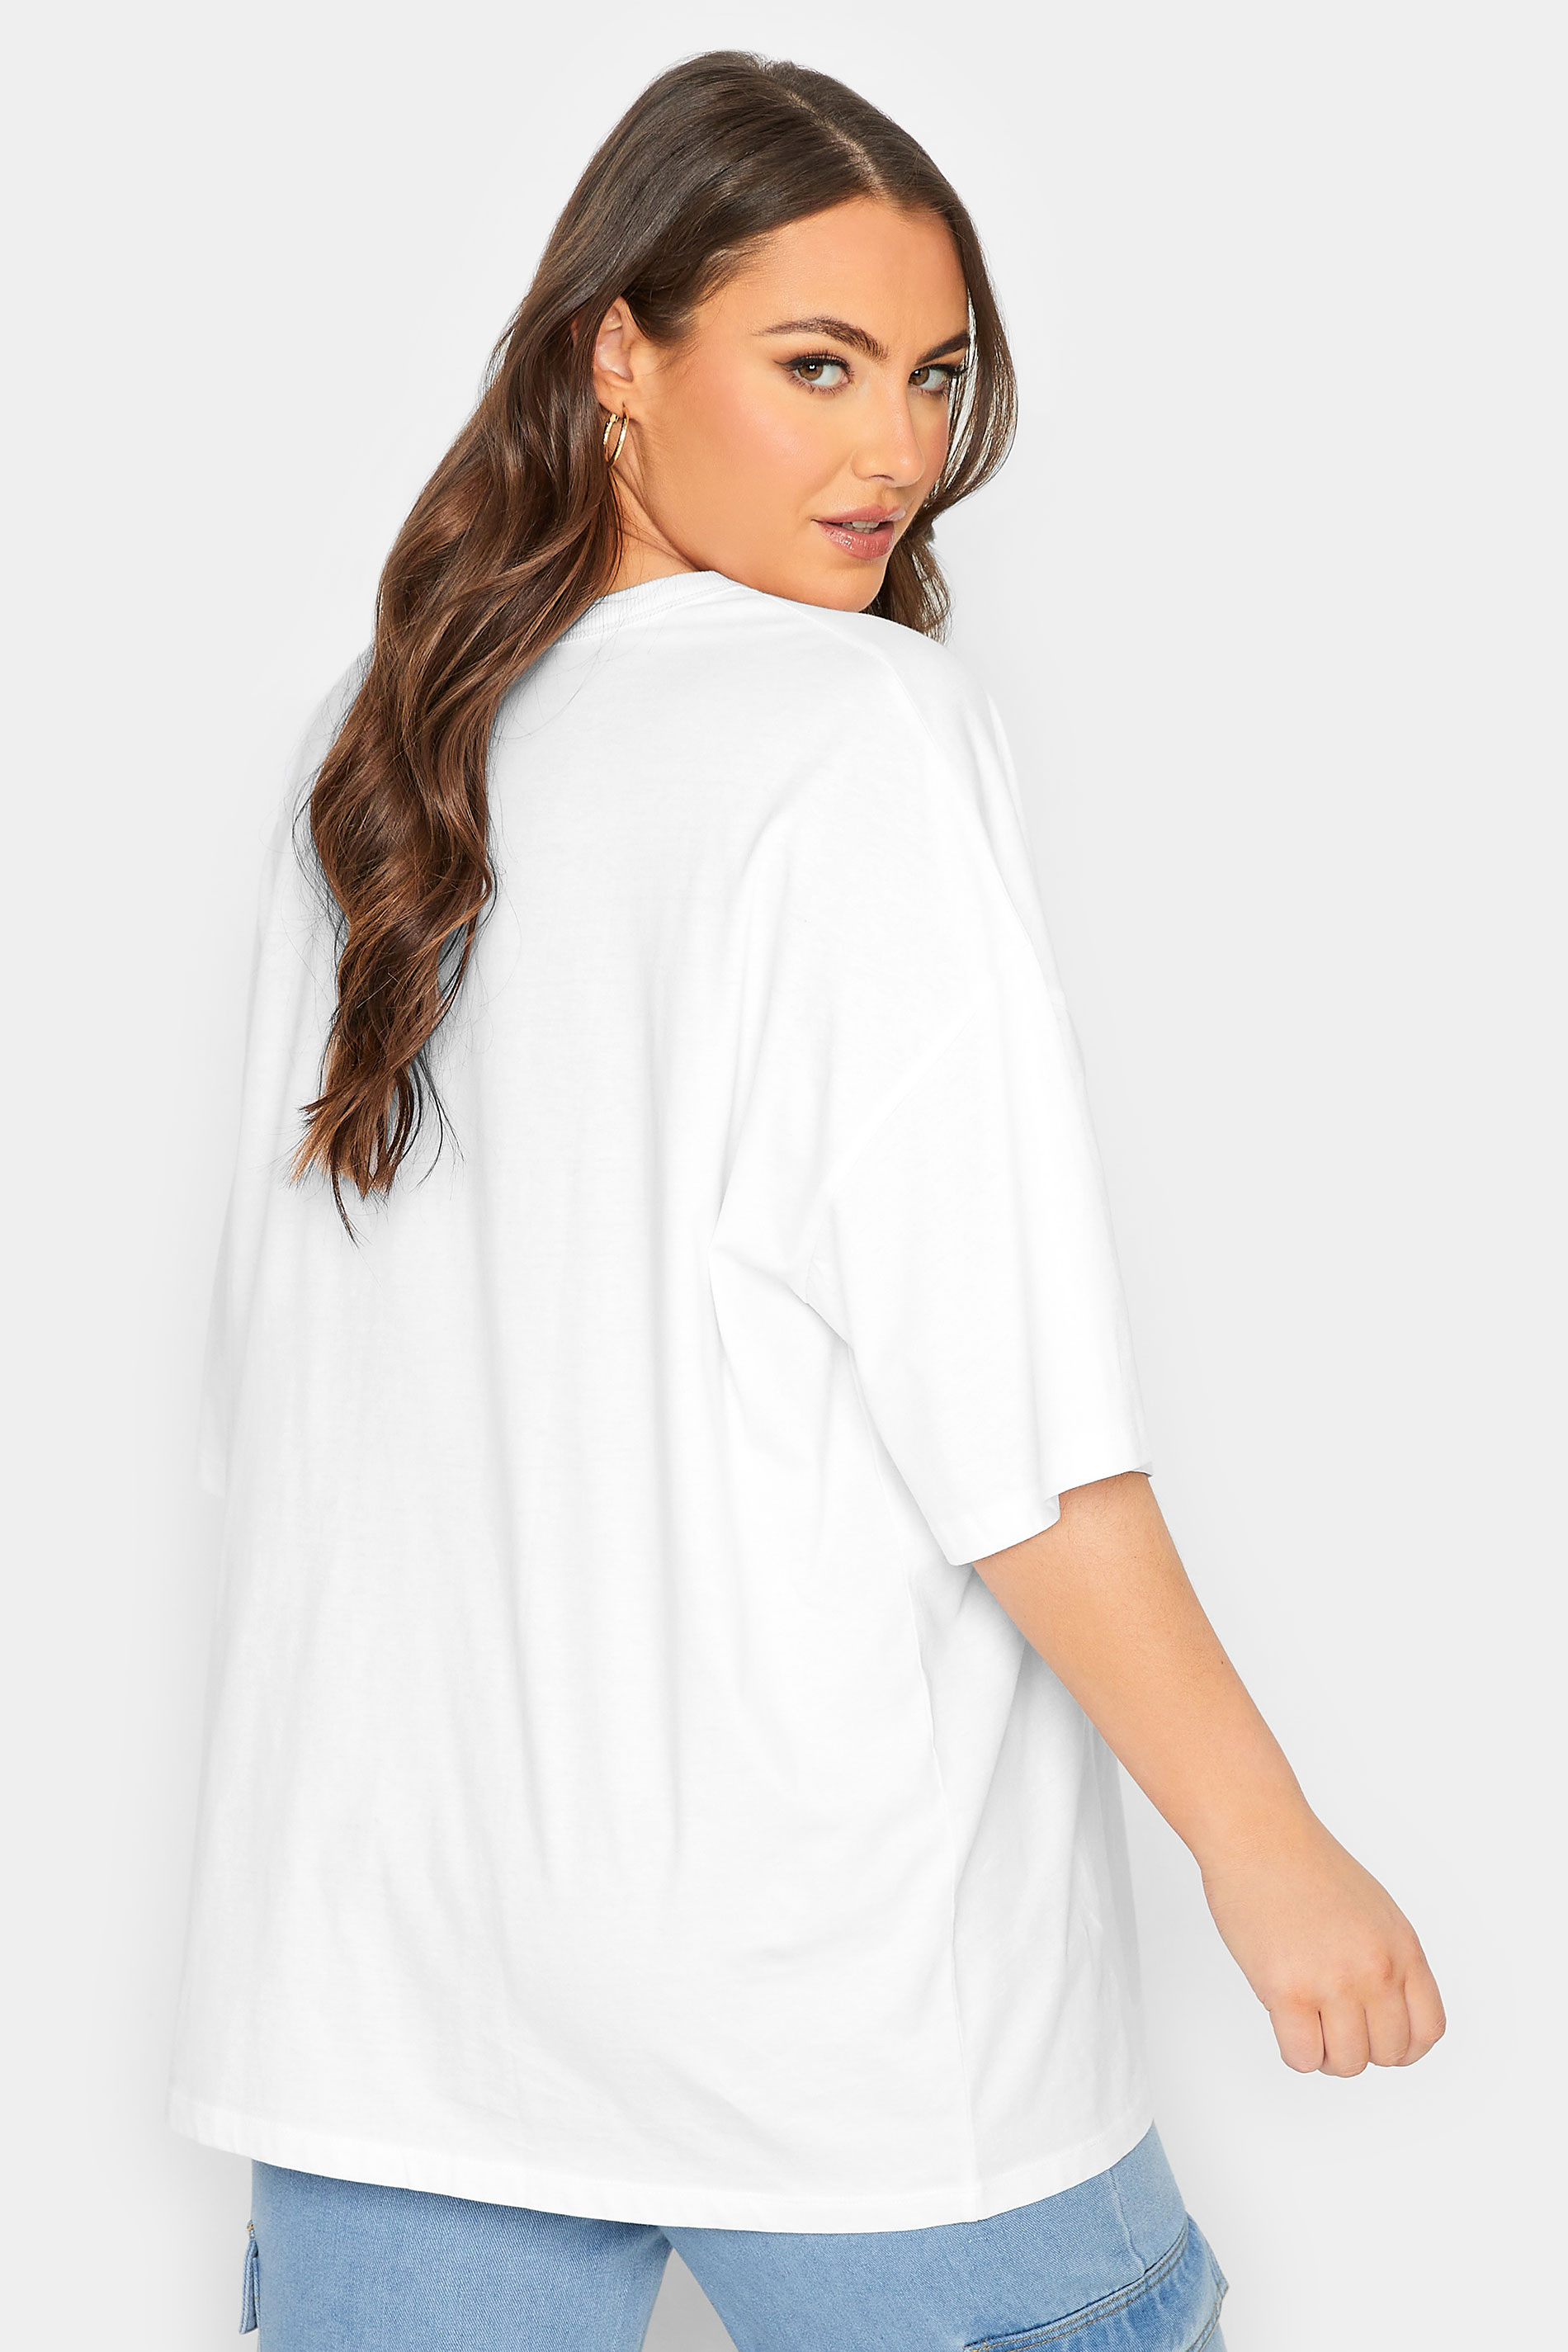 YOURS Plus Size White Oversized Boxy T-Shirt | Yours Clothing 3